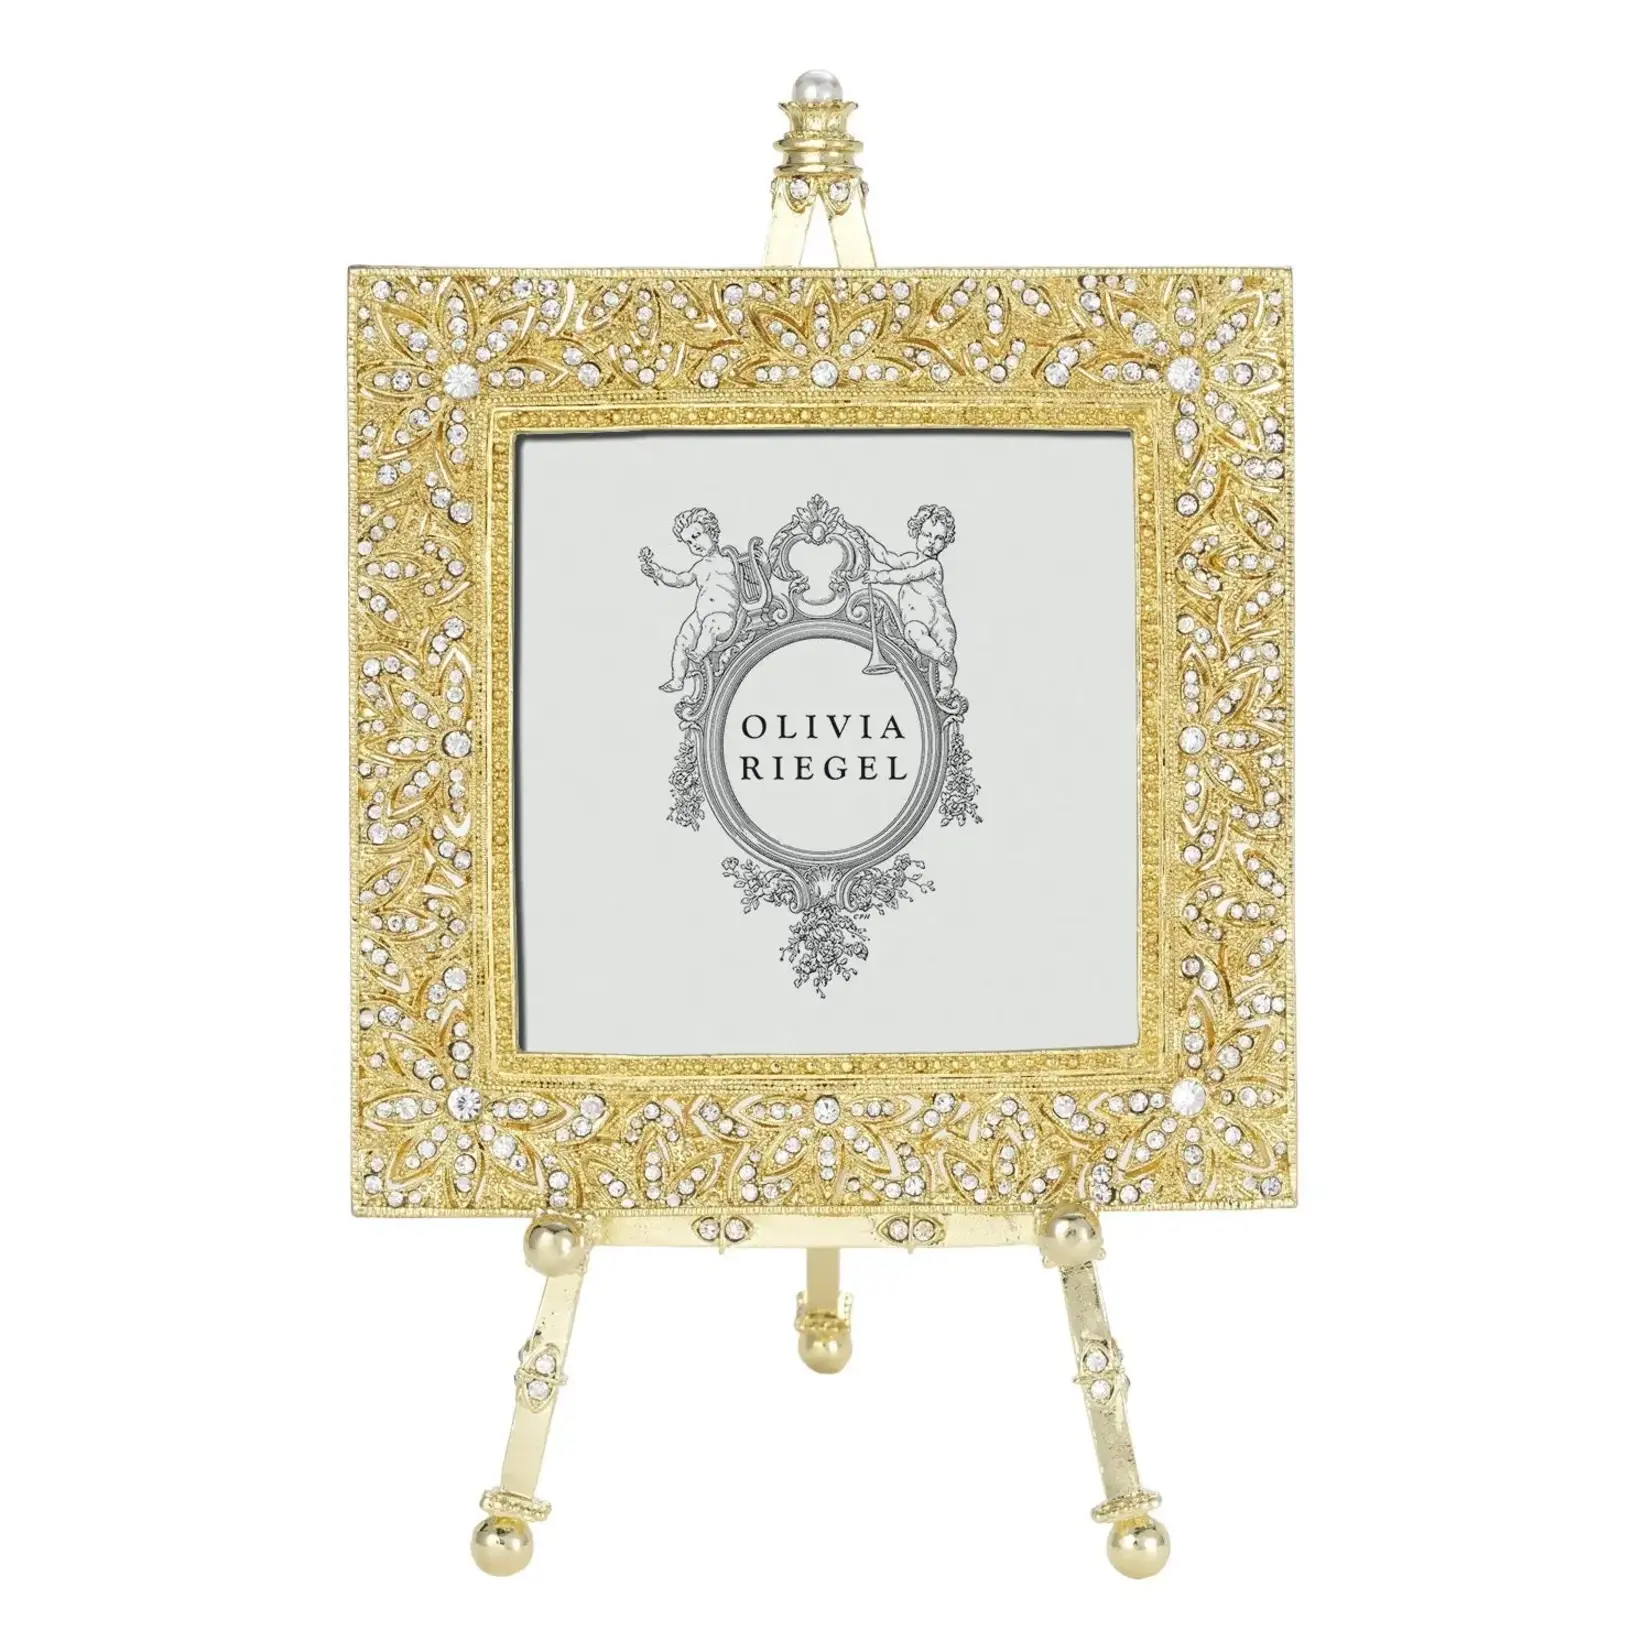 Olivia Riegel Windsor 4" x 4" Frame on Easel Gold